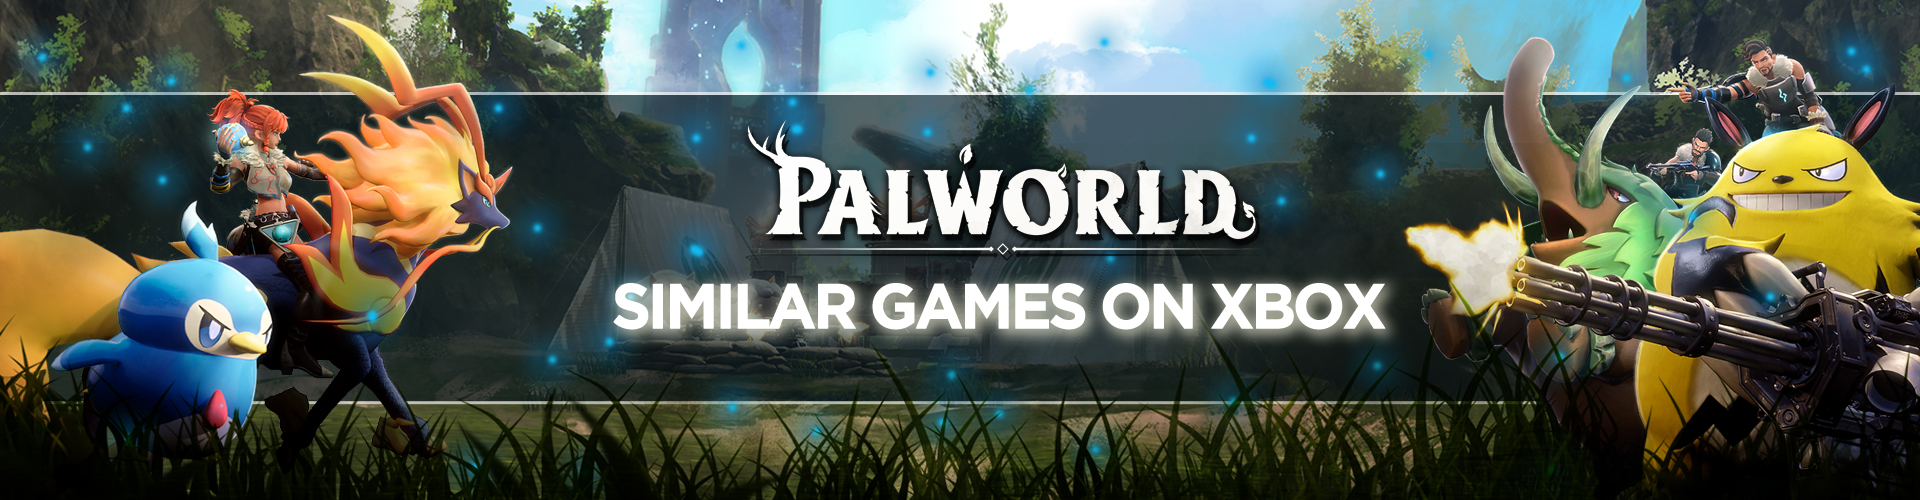 Games Like Palworld on Xbox